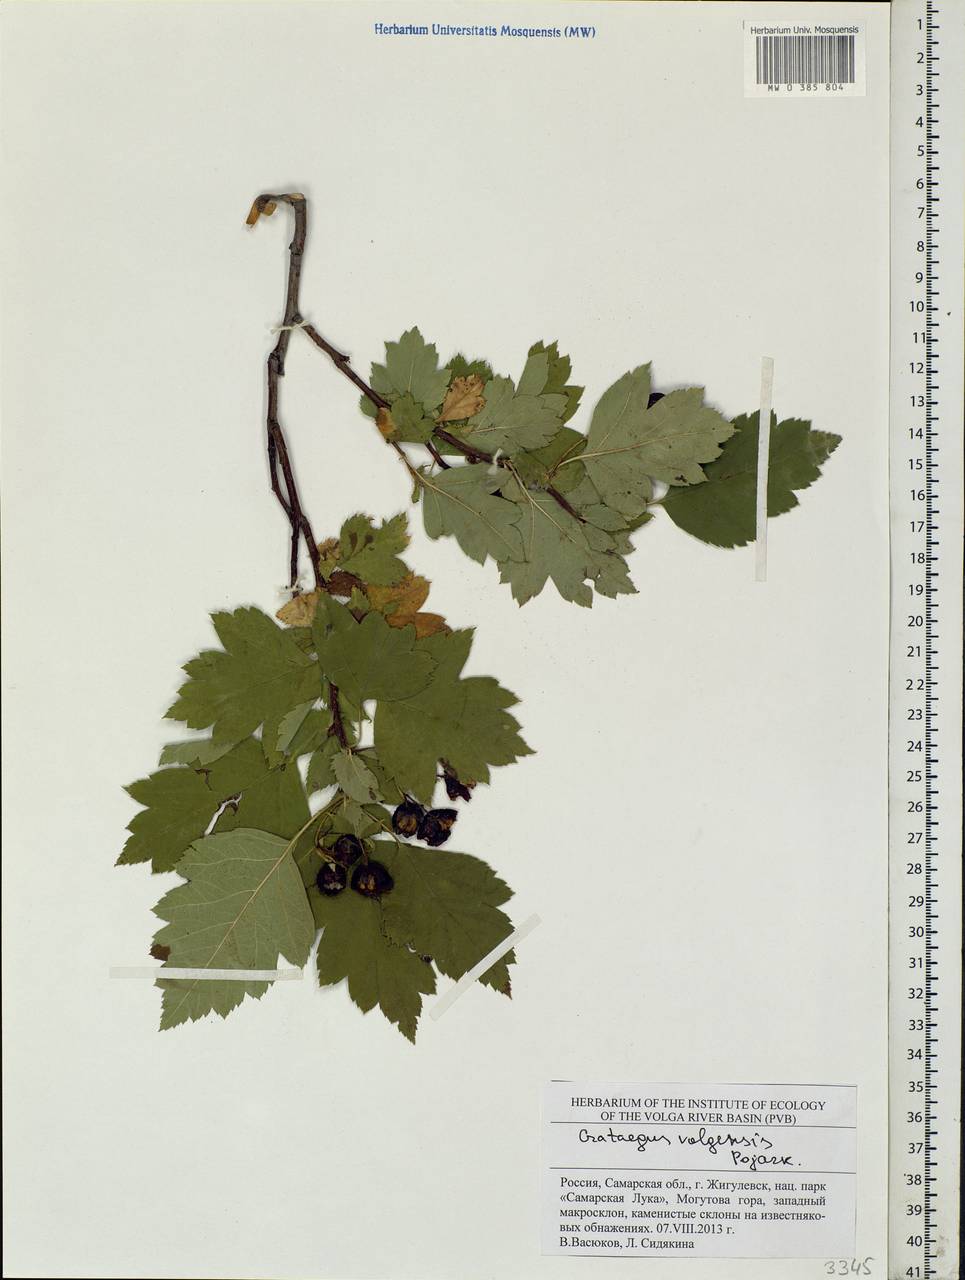 Crataegus ambigua subsp. ambigua, Eastern Europe, Middle Volga region (E8) (Russia)